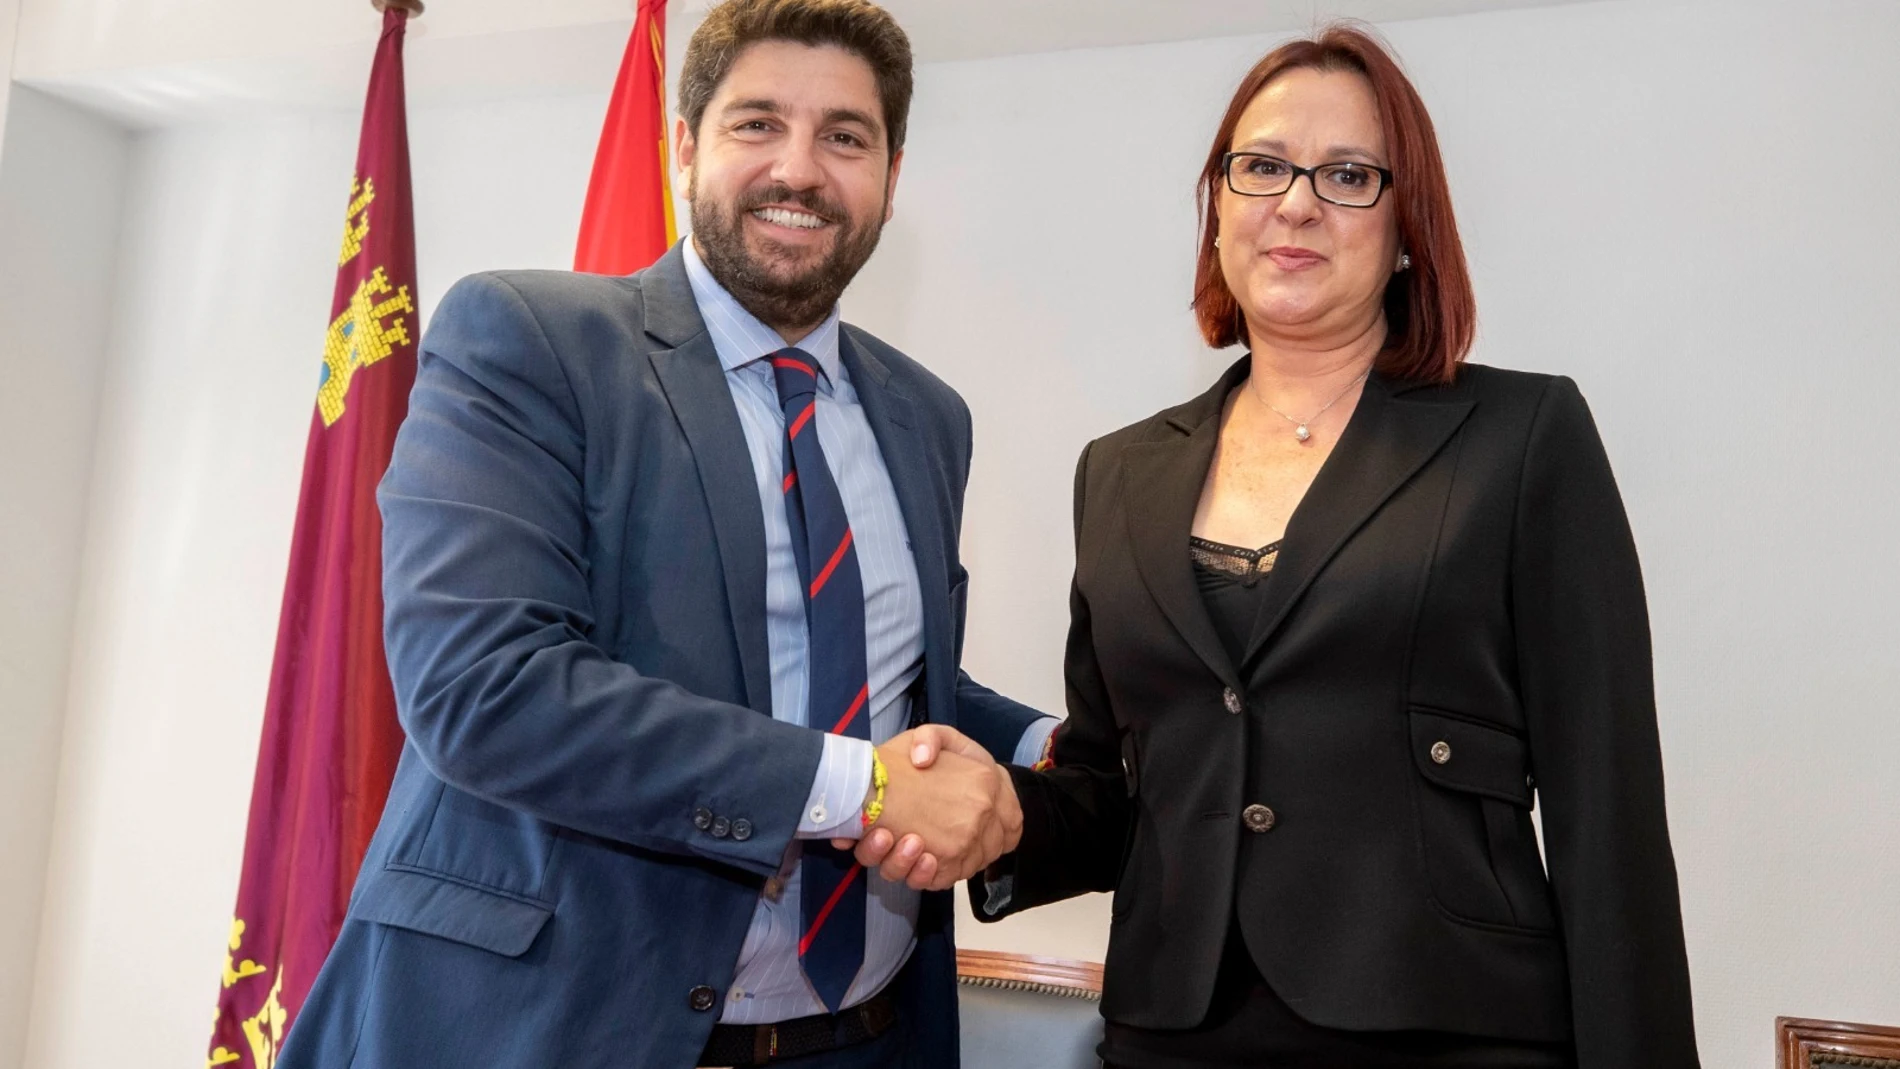 El candidato del PP a presidir la Comunidad, Fernando López Miras junto a Isabel Franco, de Cs, tras la firma del acuerdo para la investidura el pasado lunes. LA RAZÓN